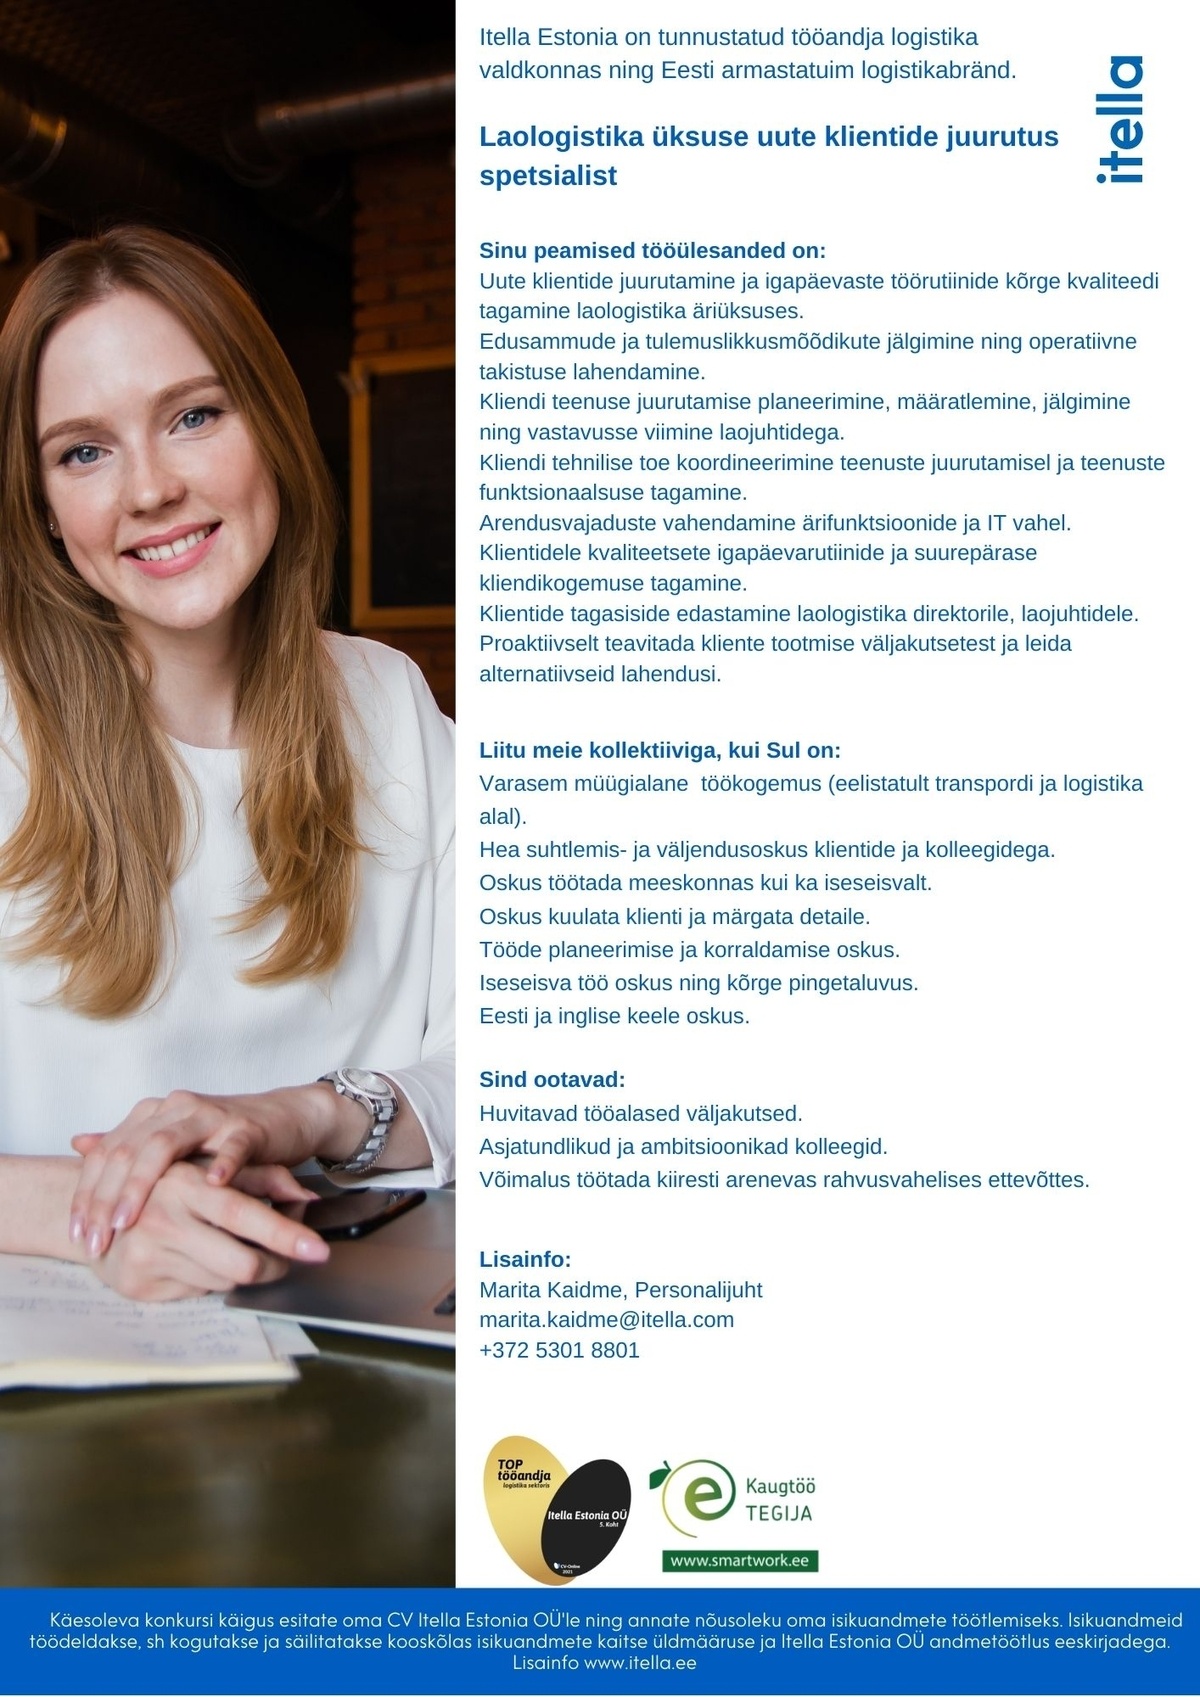 Itella Estonia OÜ Laologistika üksuse uute klientide juurutus spetsialist